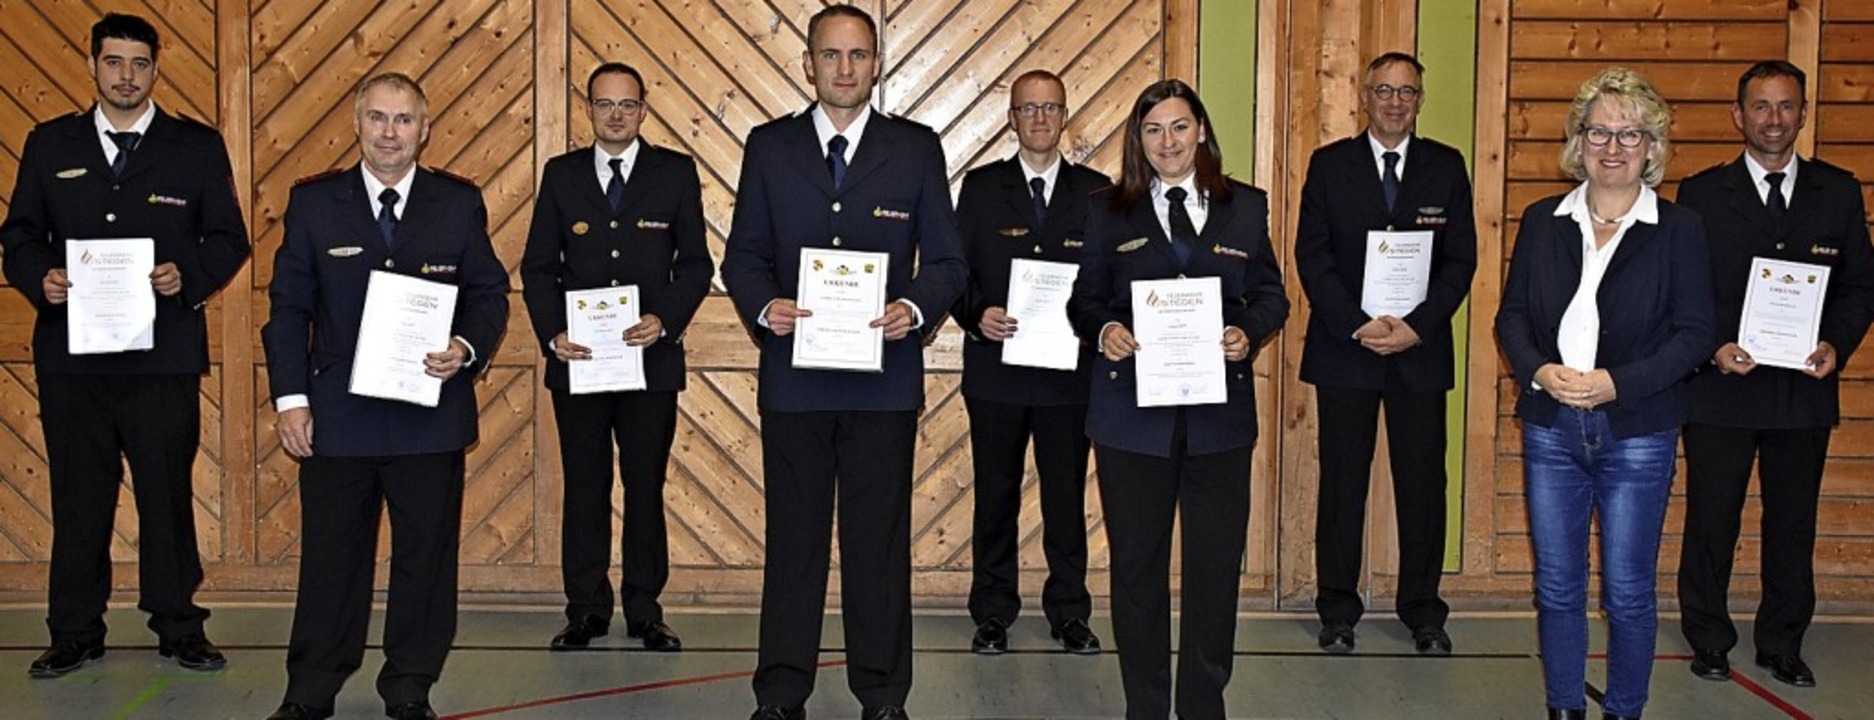 Bürgermeisterin Fränzi Kleeb gratulierte Mitgliedern der Wehr zur Beförderung.  | Foto: Thomas Biniossek